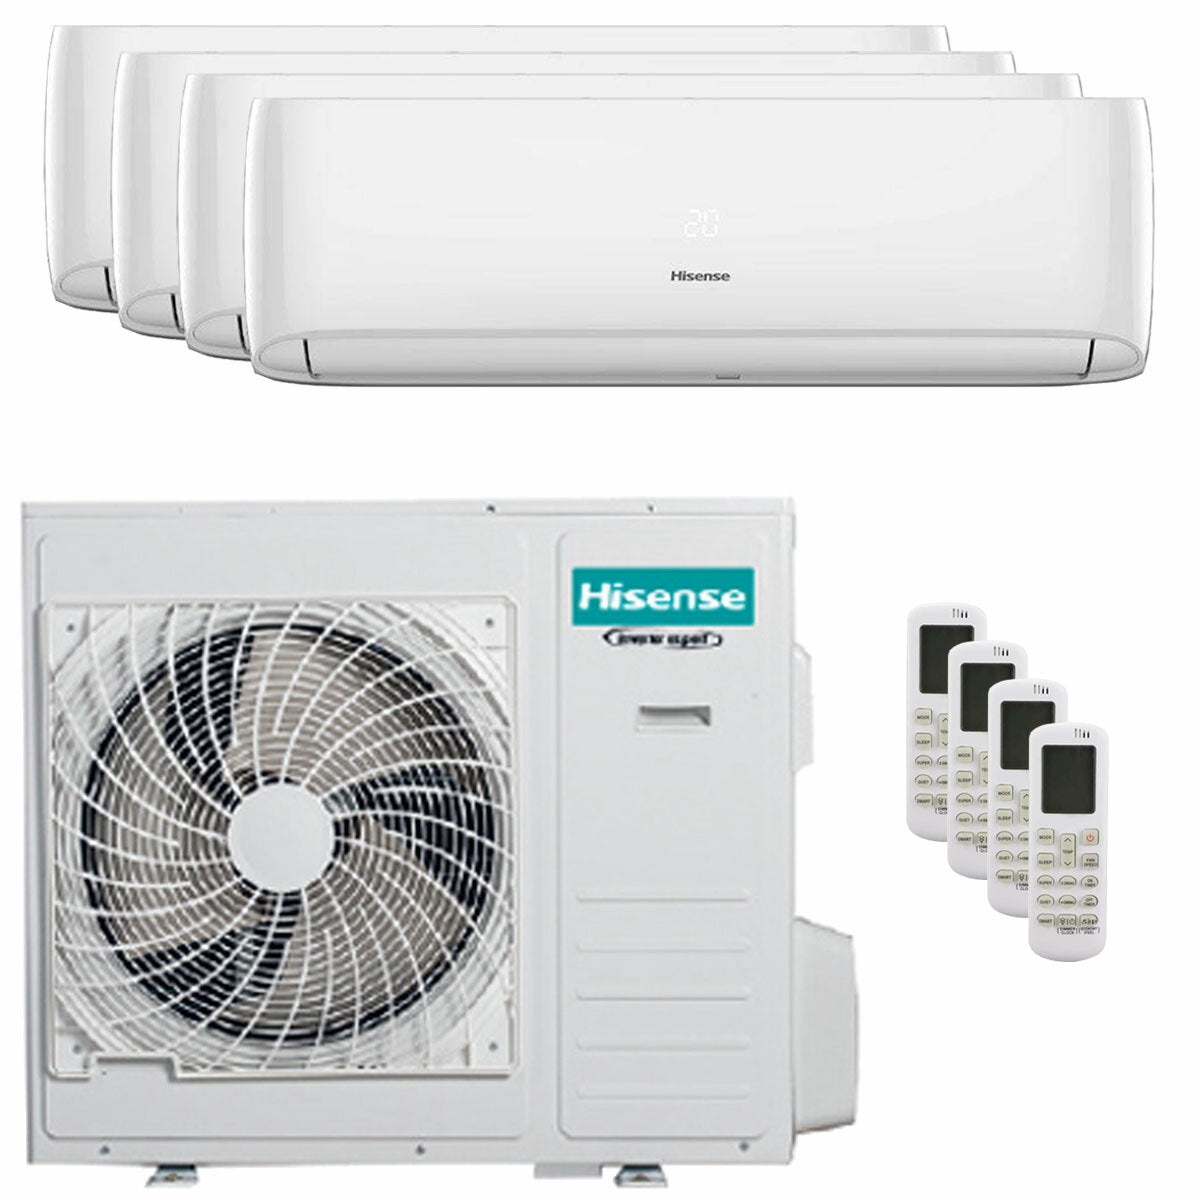 Hisense Hi-Comfort quadri split air conditioner 9000+12000+12000+12000 BTU inverter A++ wifi outdoor unit 10.0 kW